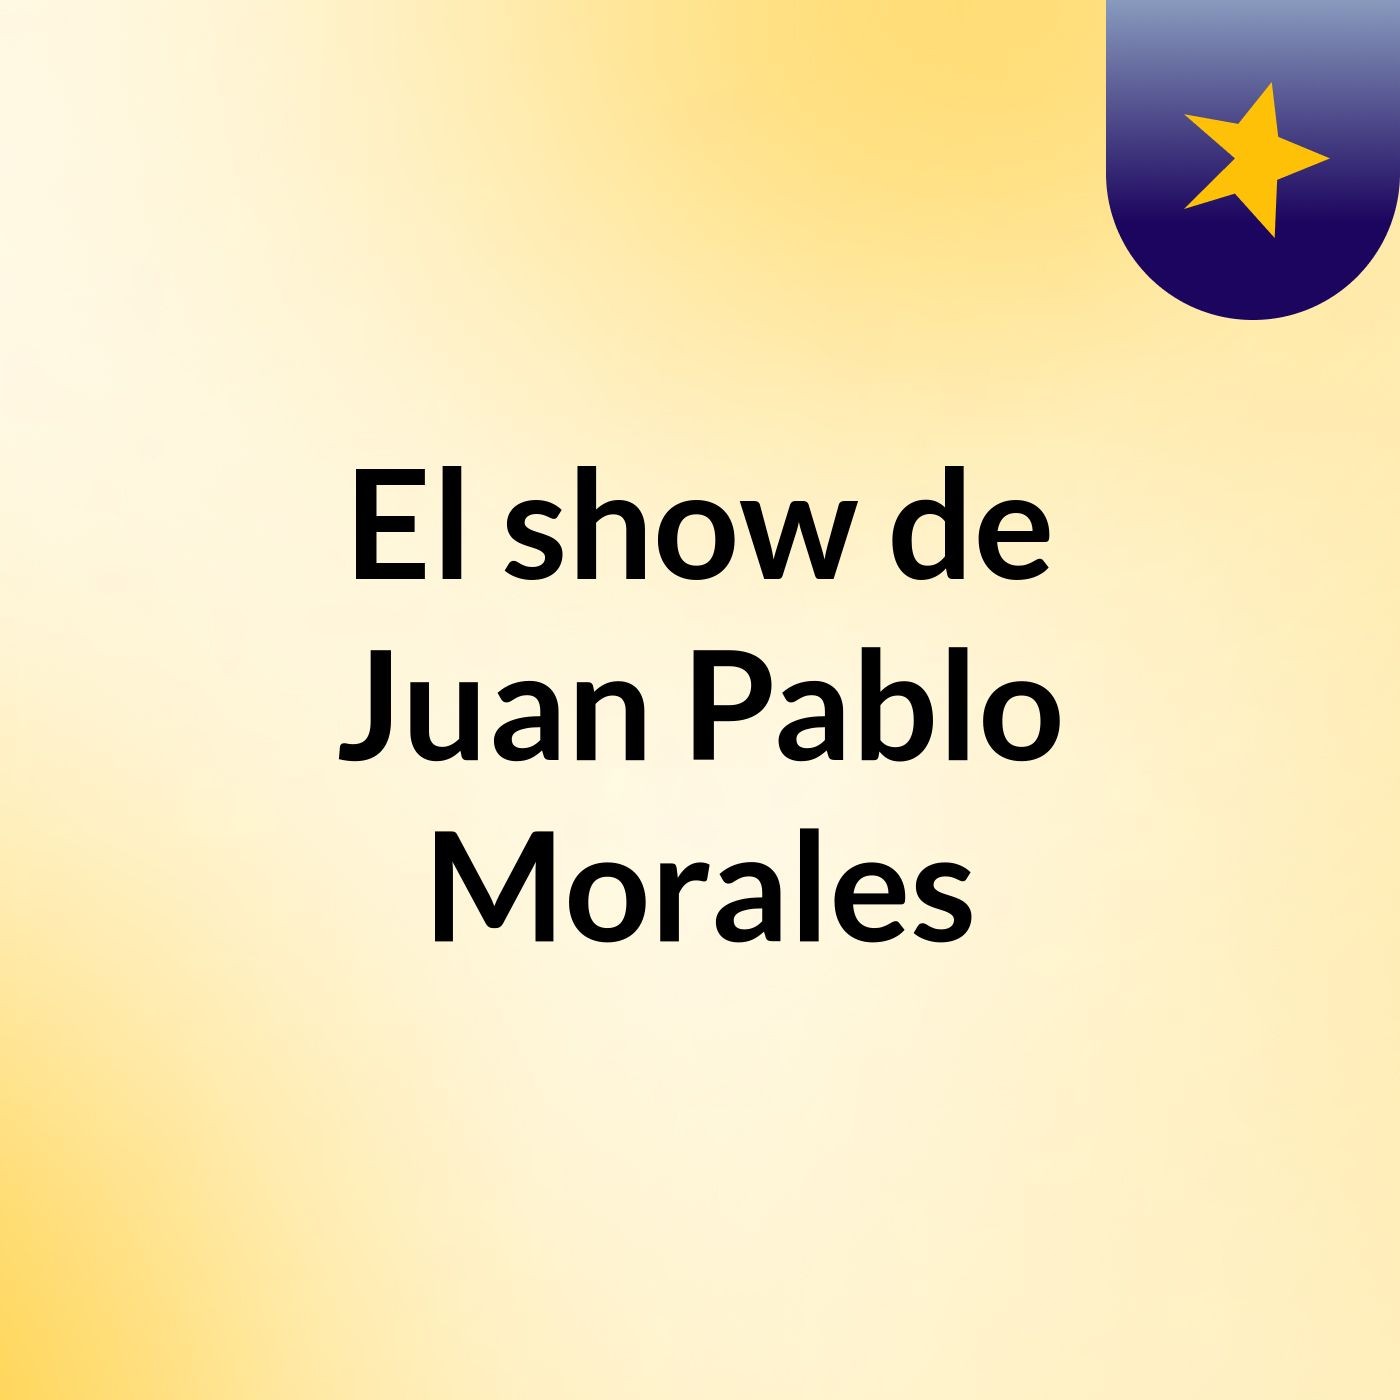 Episodio 6 - El show de Juan Pablo Morales